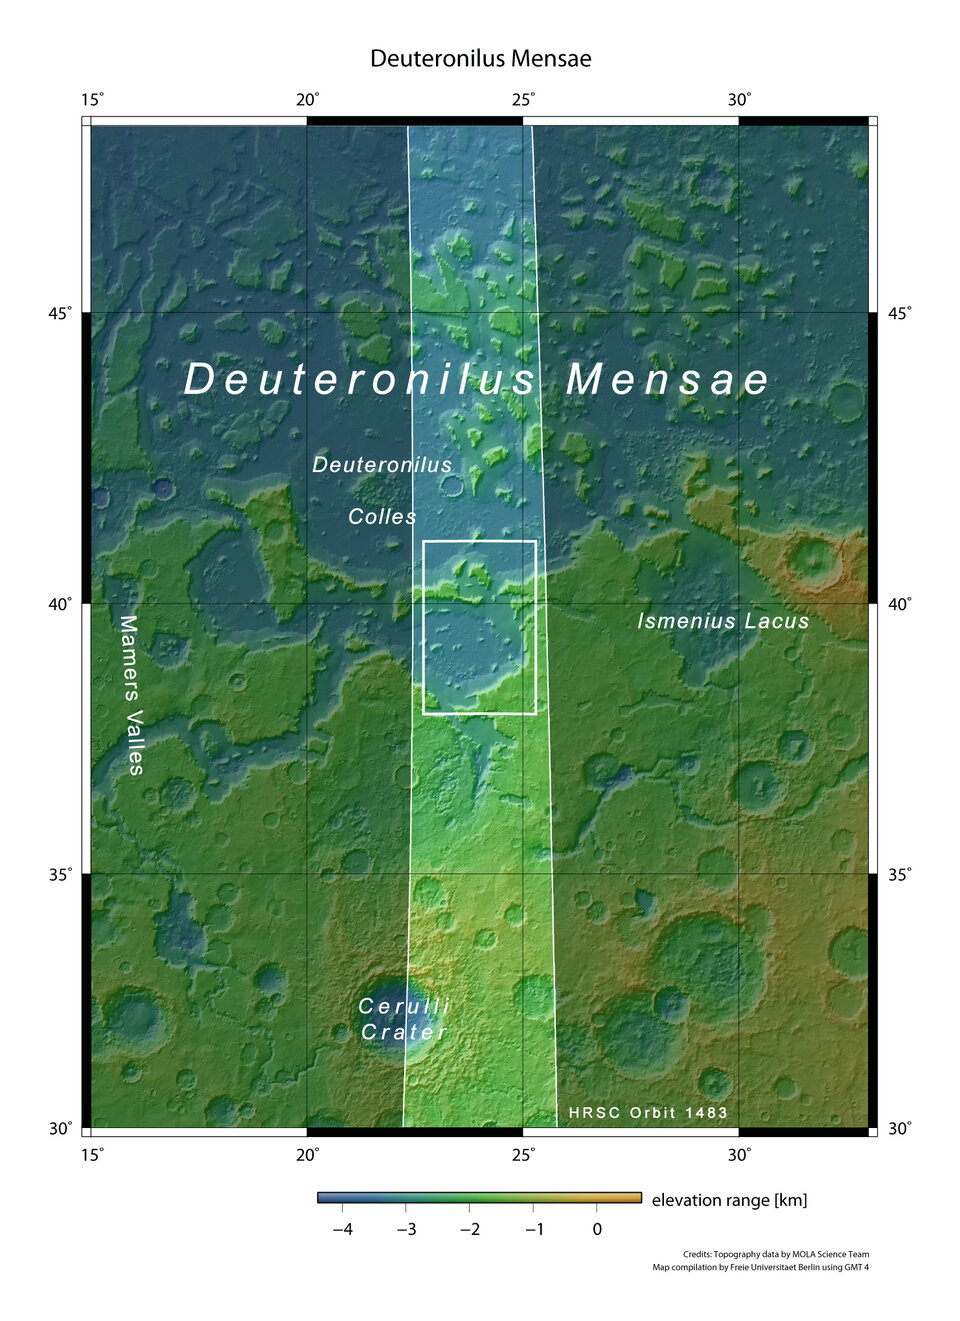 Deuteronilus Mensae in een bredere omgeving